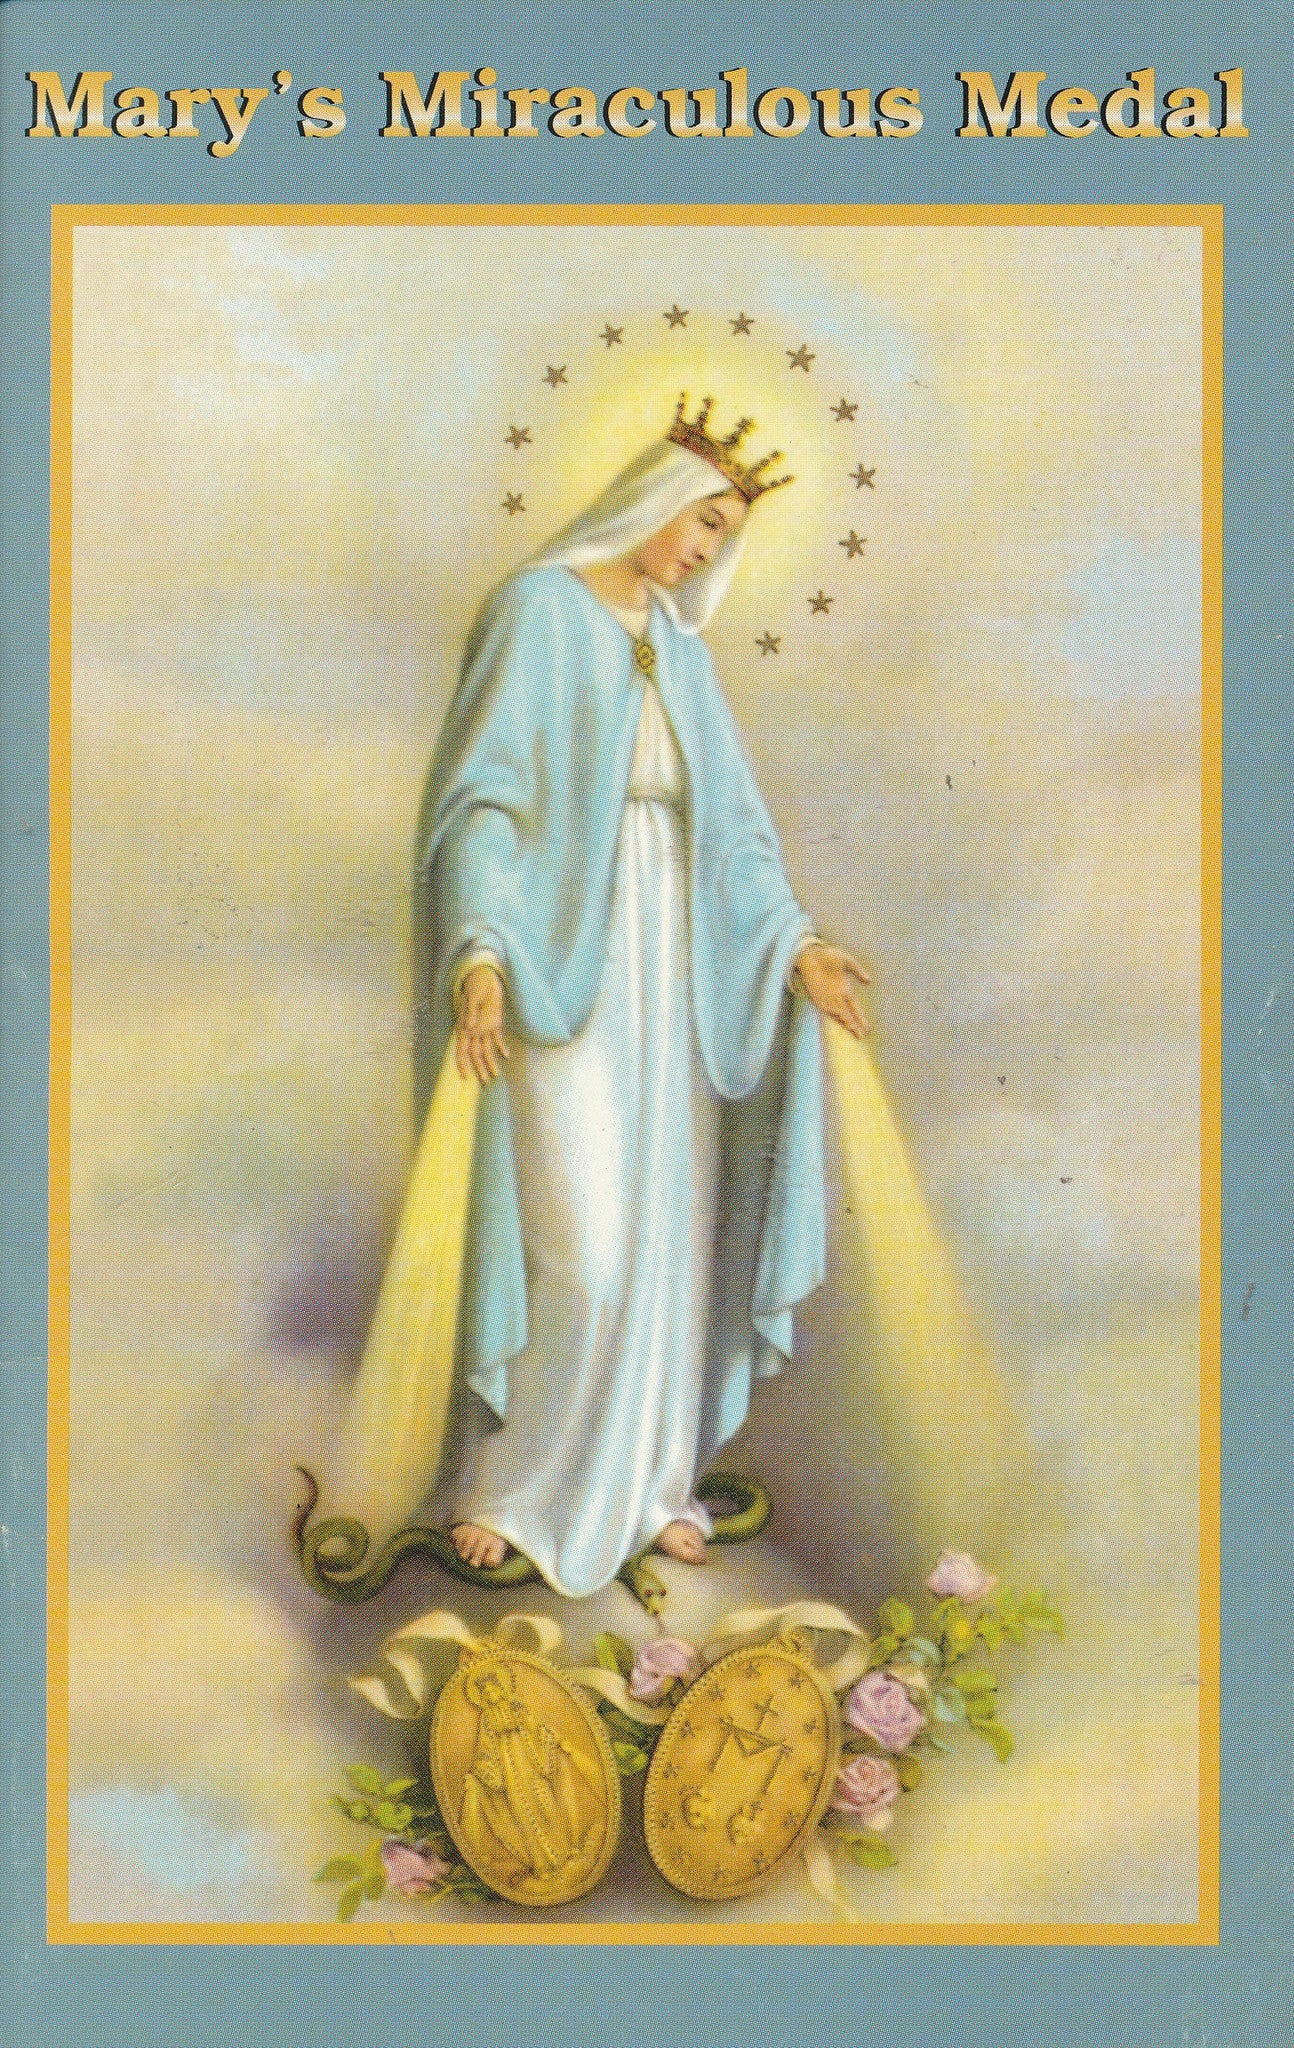 Libro de la Medalla Milagrosa de María